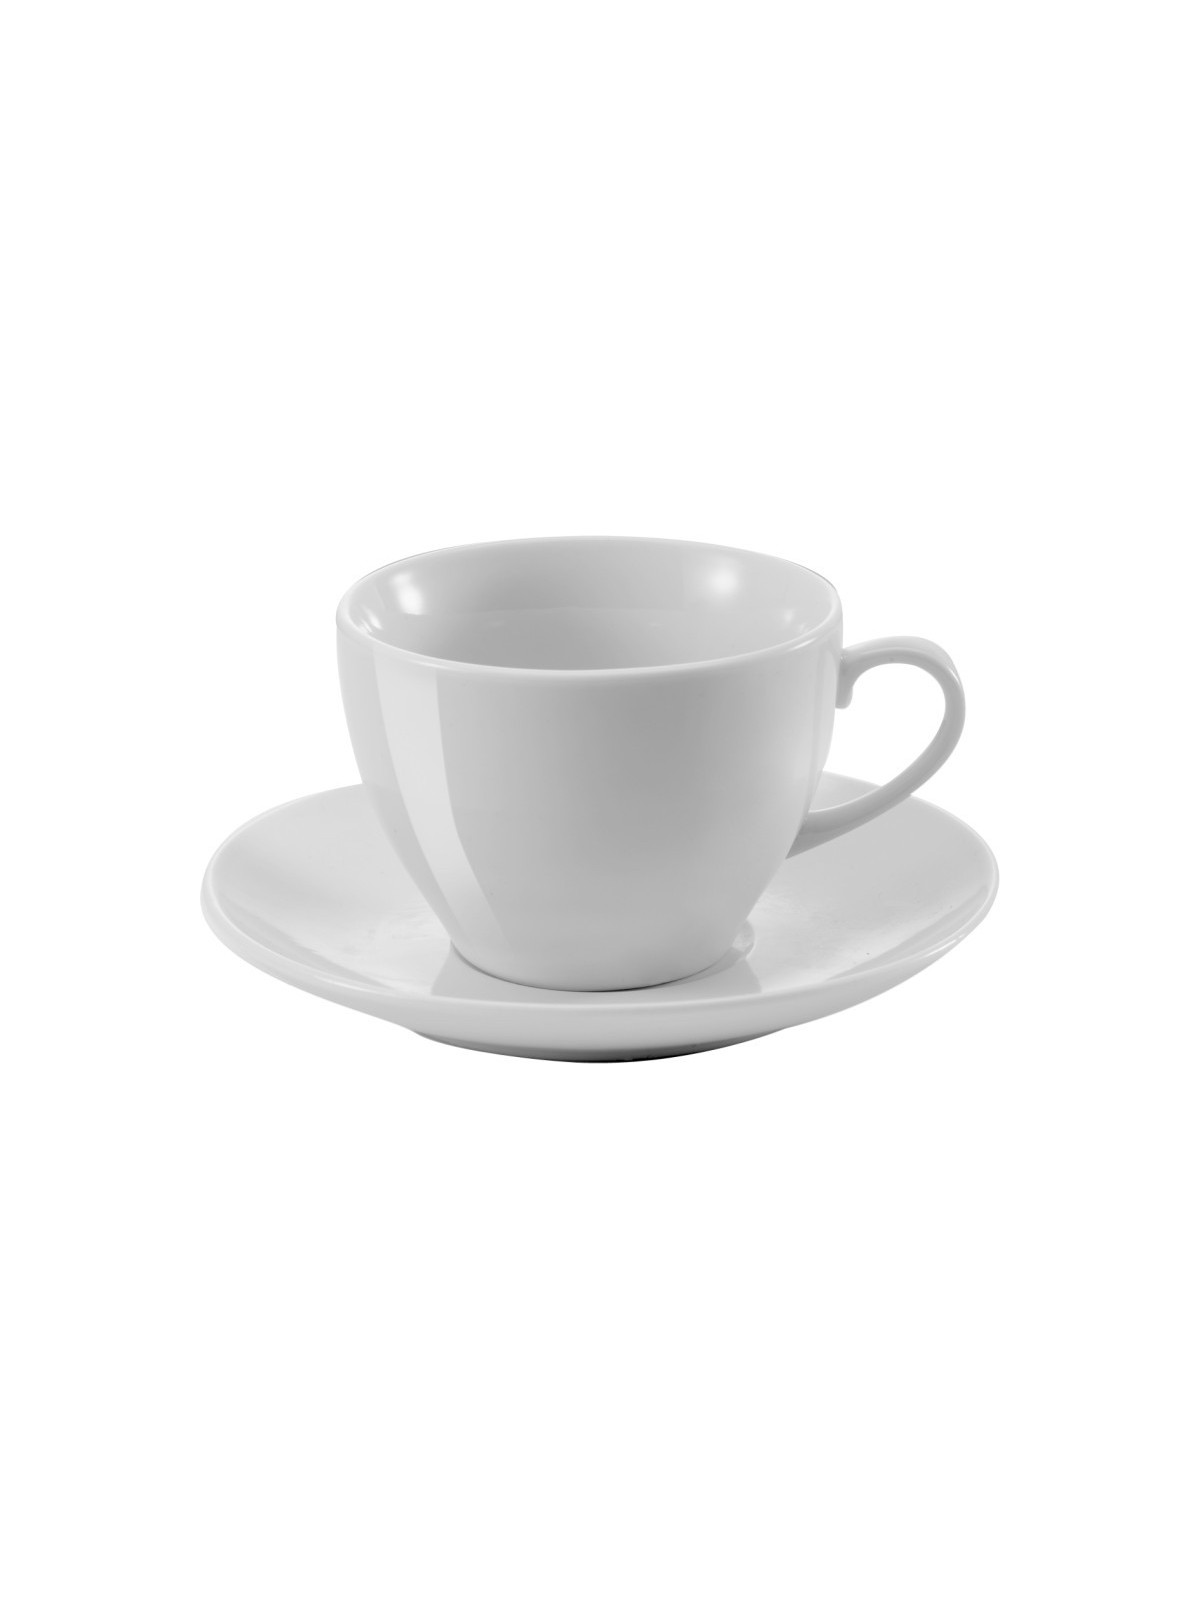 30-867 Tasse à thé en porcelaine personnalisé